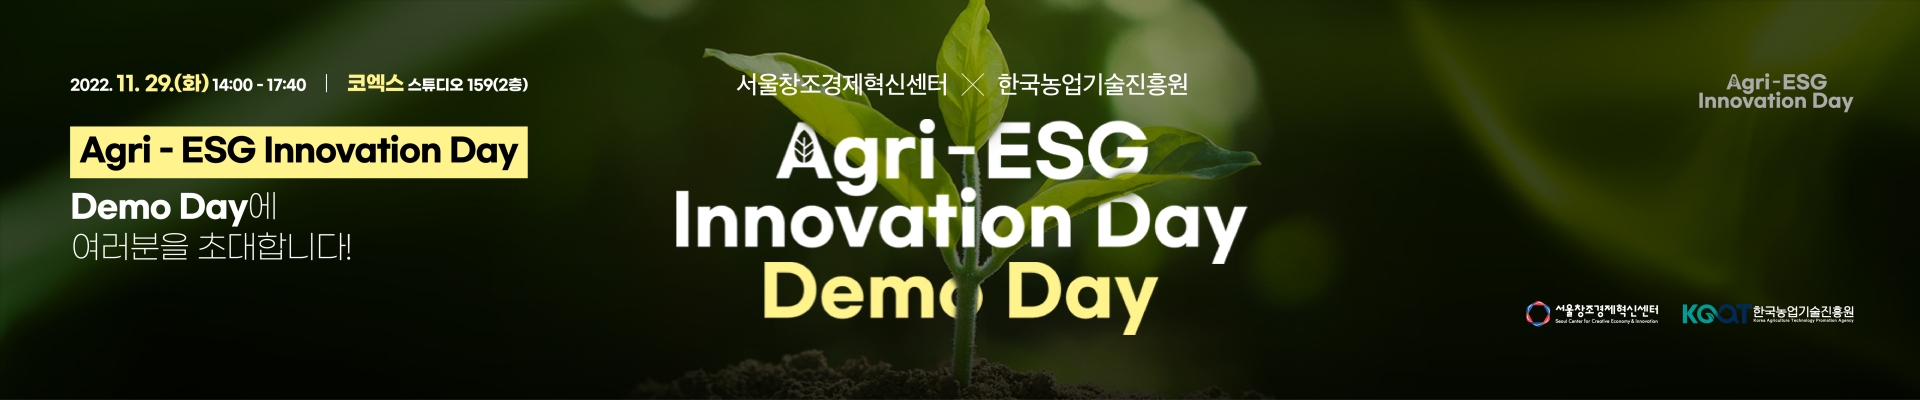 [서울창조경제혁신센터-한국농업기술진흥원] Agri-ESG Innovation Day 데모데이 및 시상식 